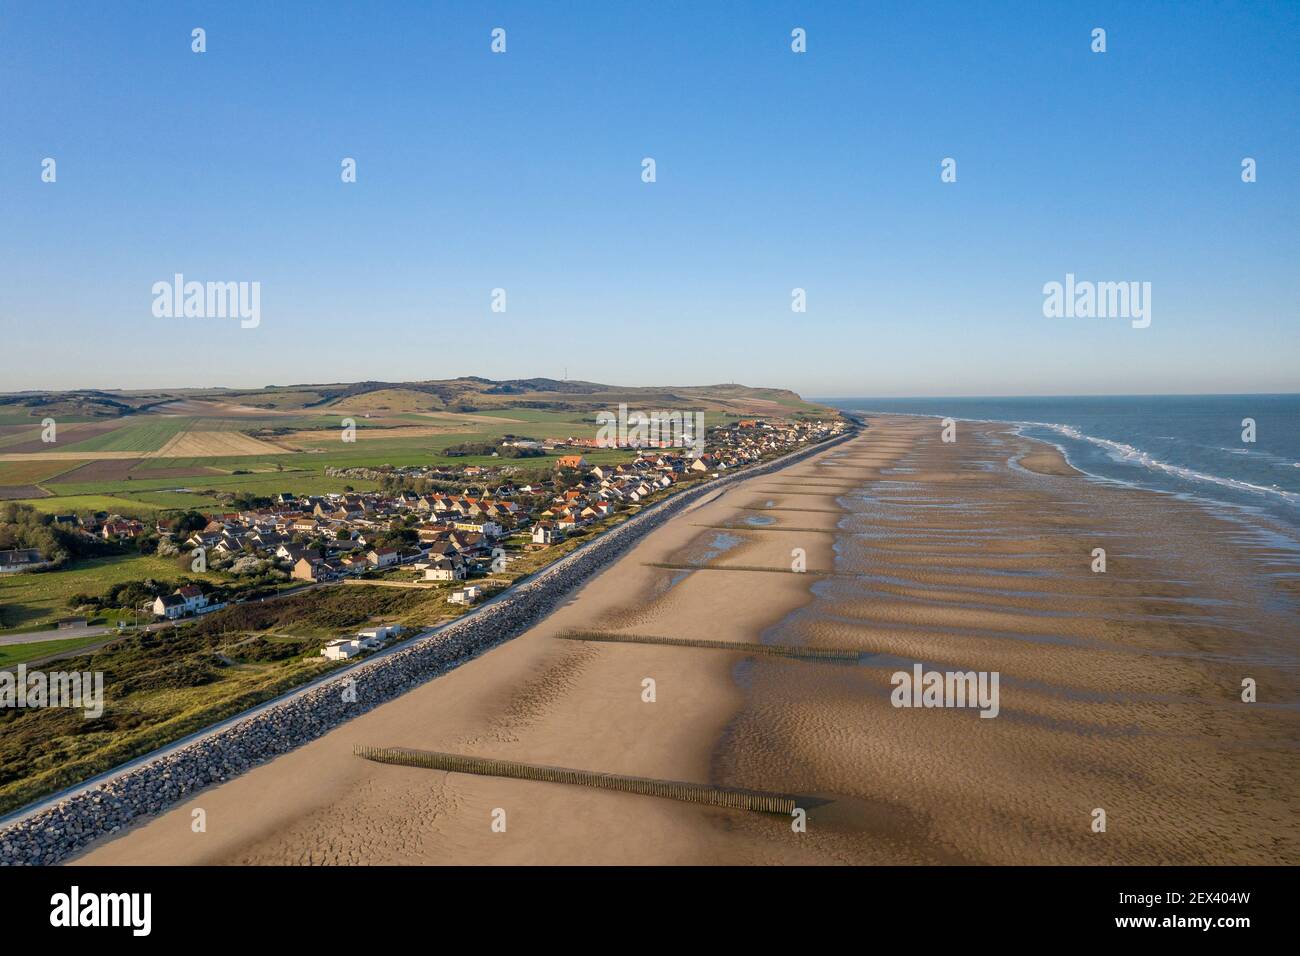 Vue aérienne du village de Sangatte et de sa plage en été, Côte d'Opale, pas de Calais, France Banque D'Images